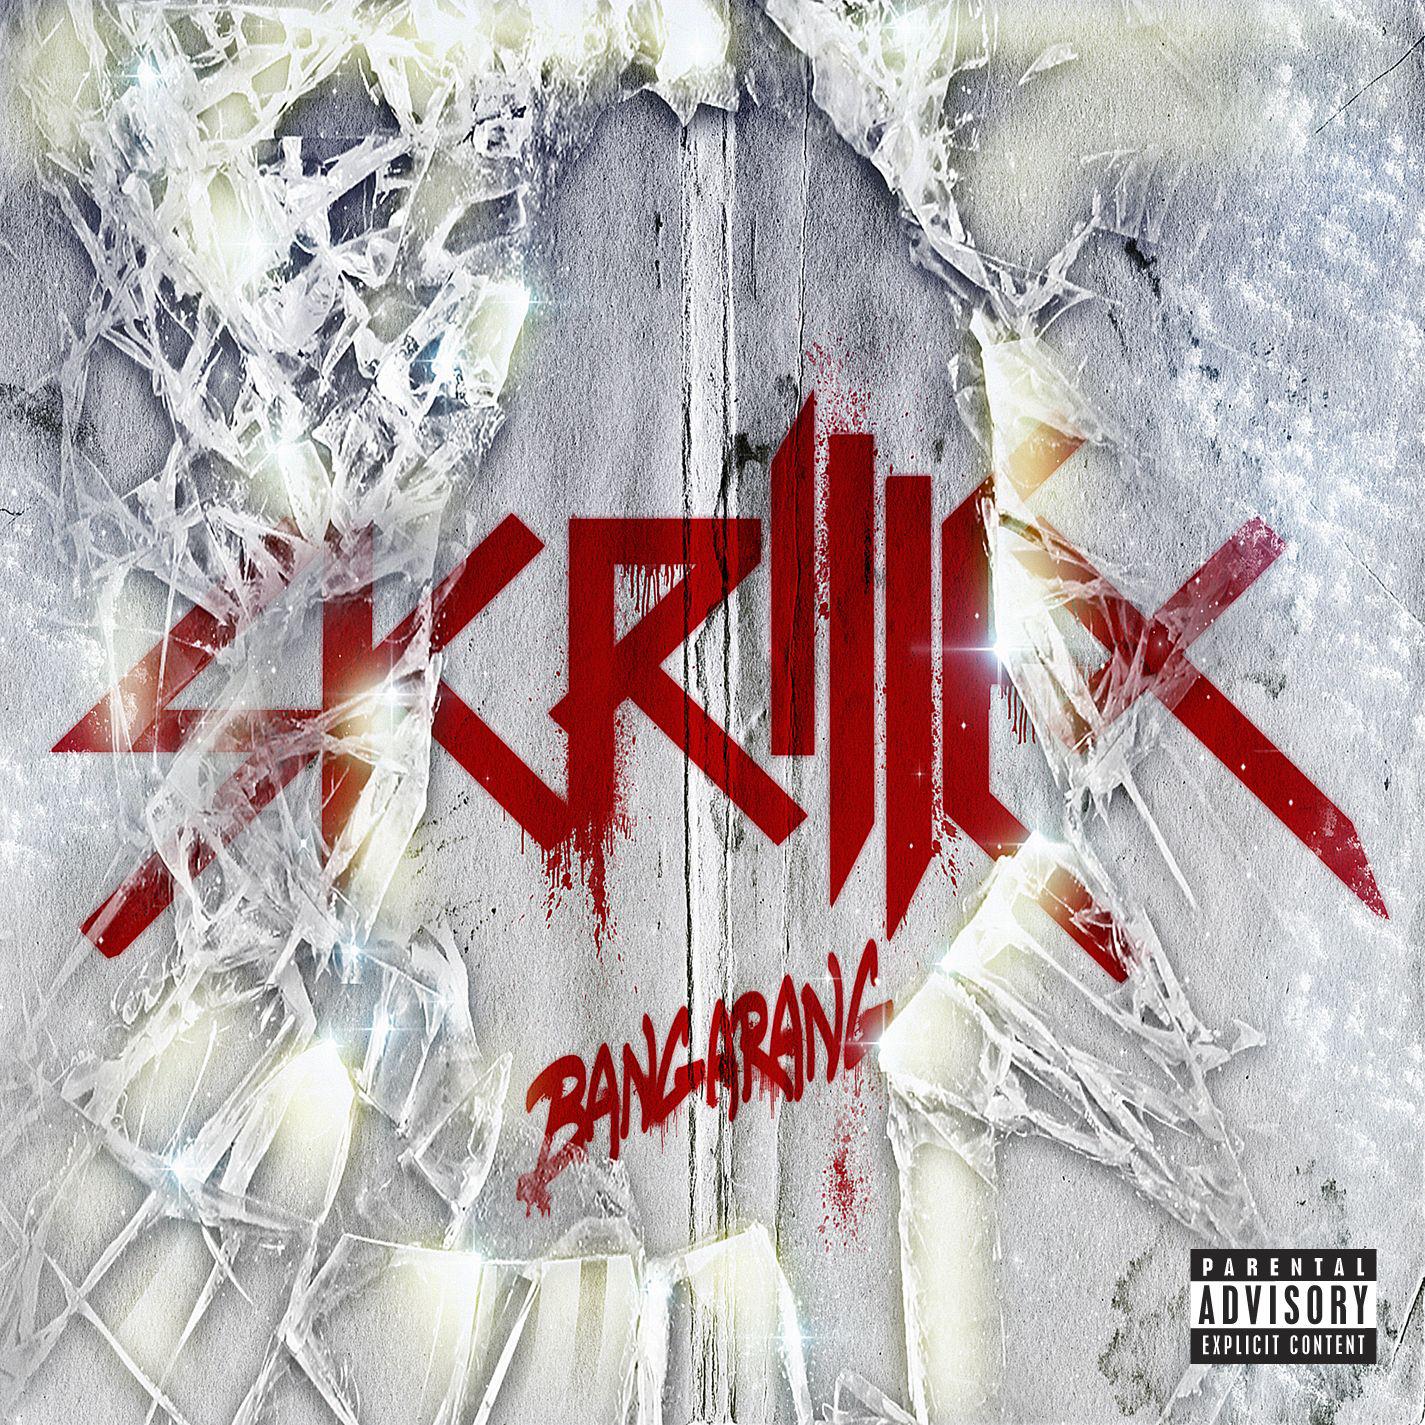 Bangarang歌词 歌手Skrillex / Sirah-专辑Bangarang EP-单曲《Bangarang》LRC歌词下载